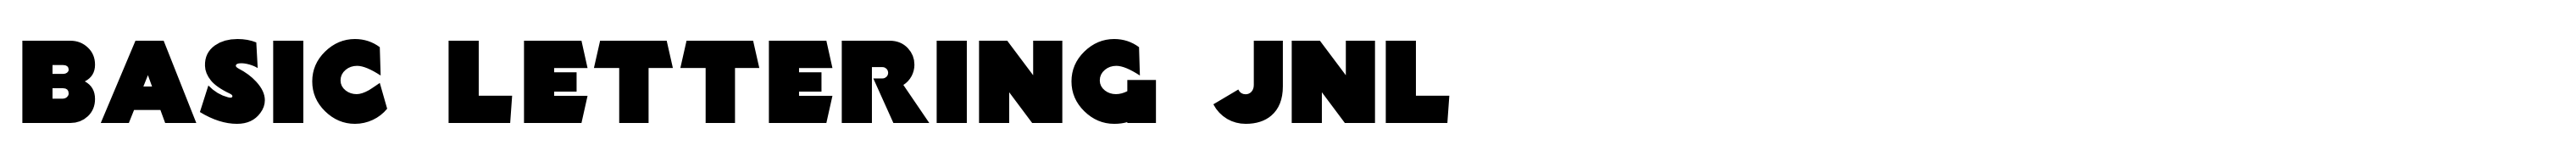 Basic Lettering JNL